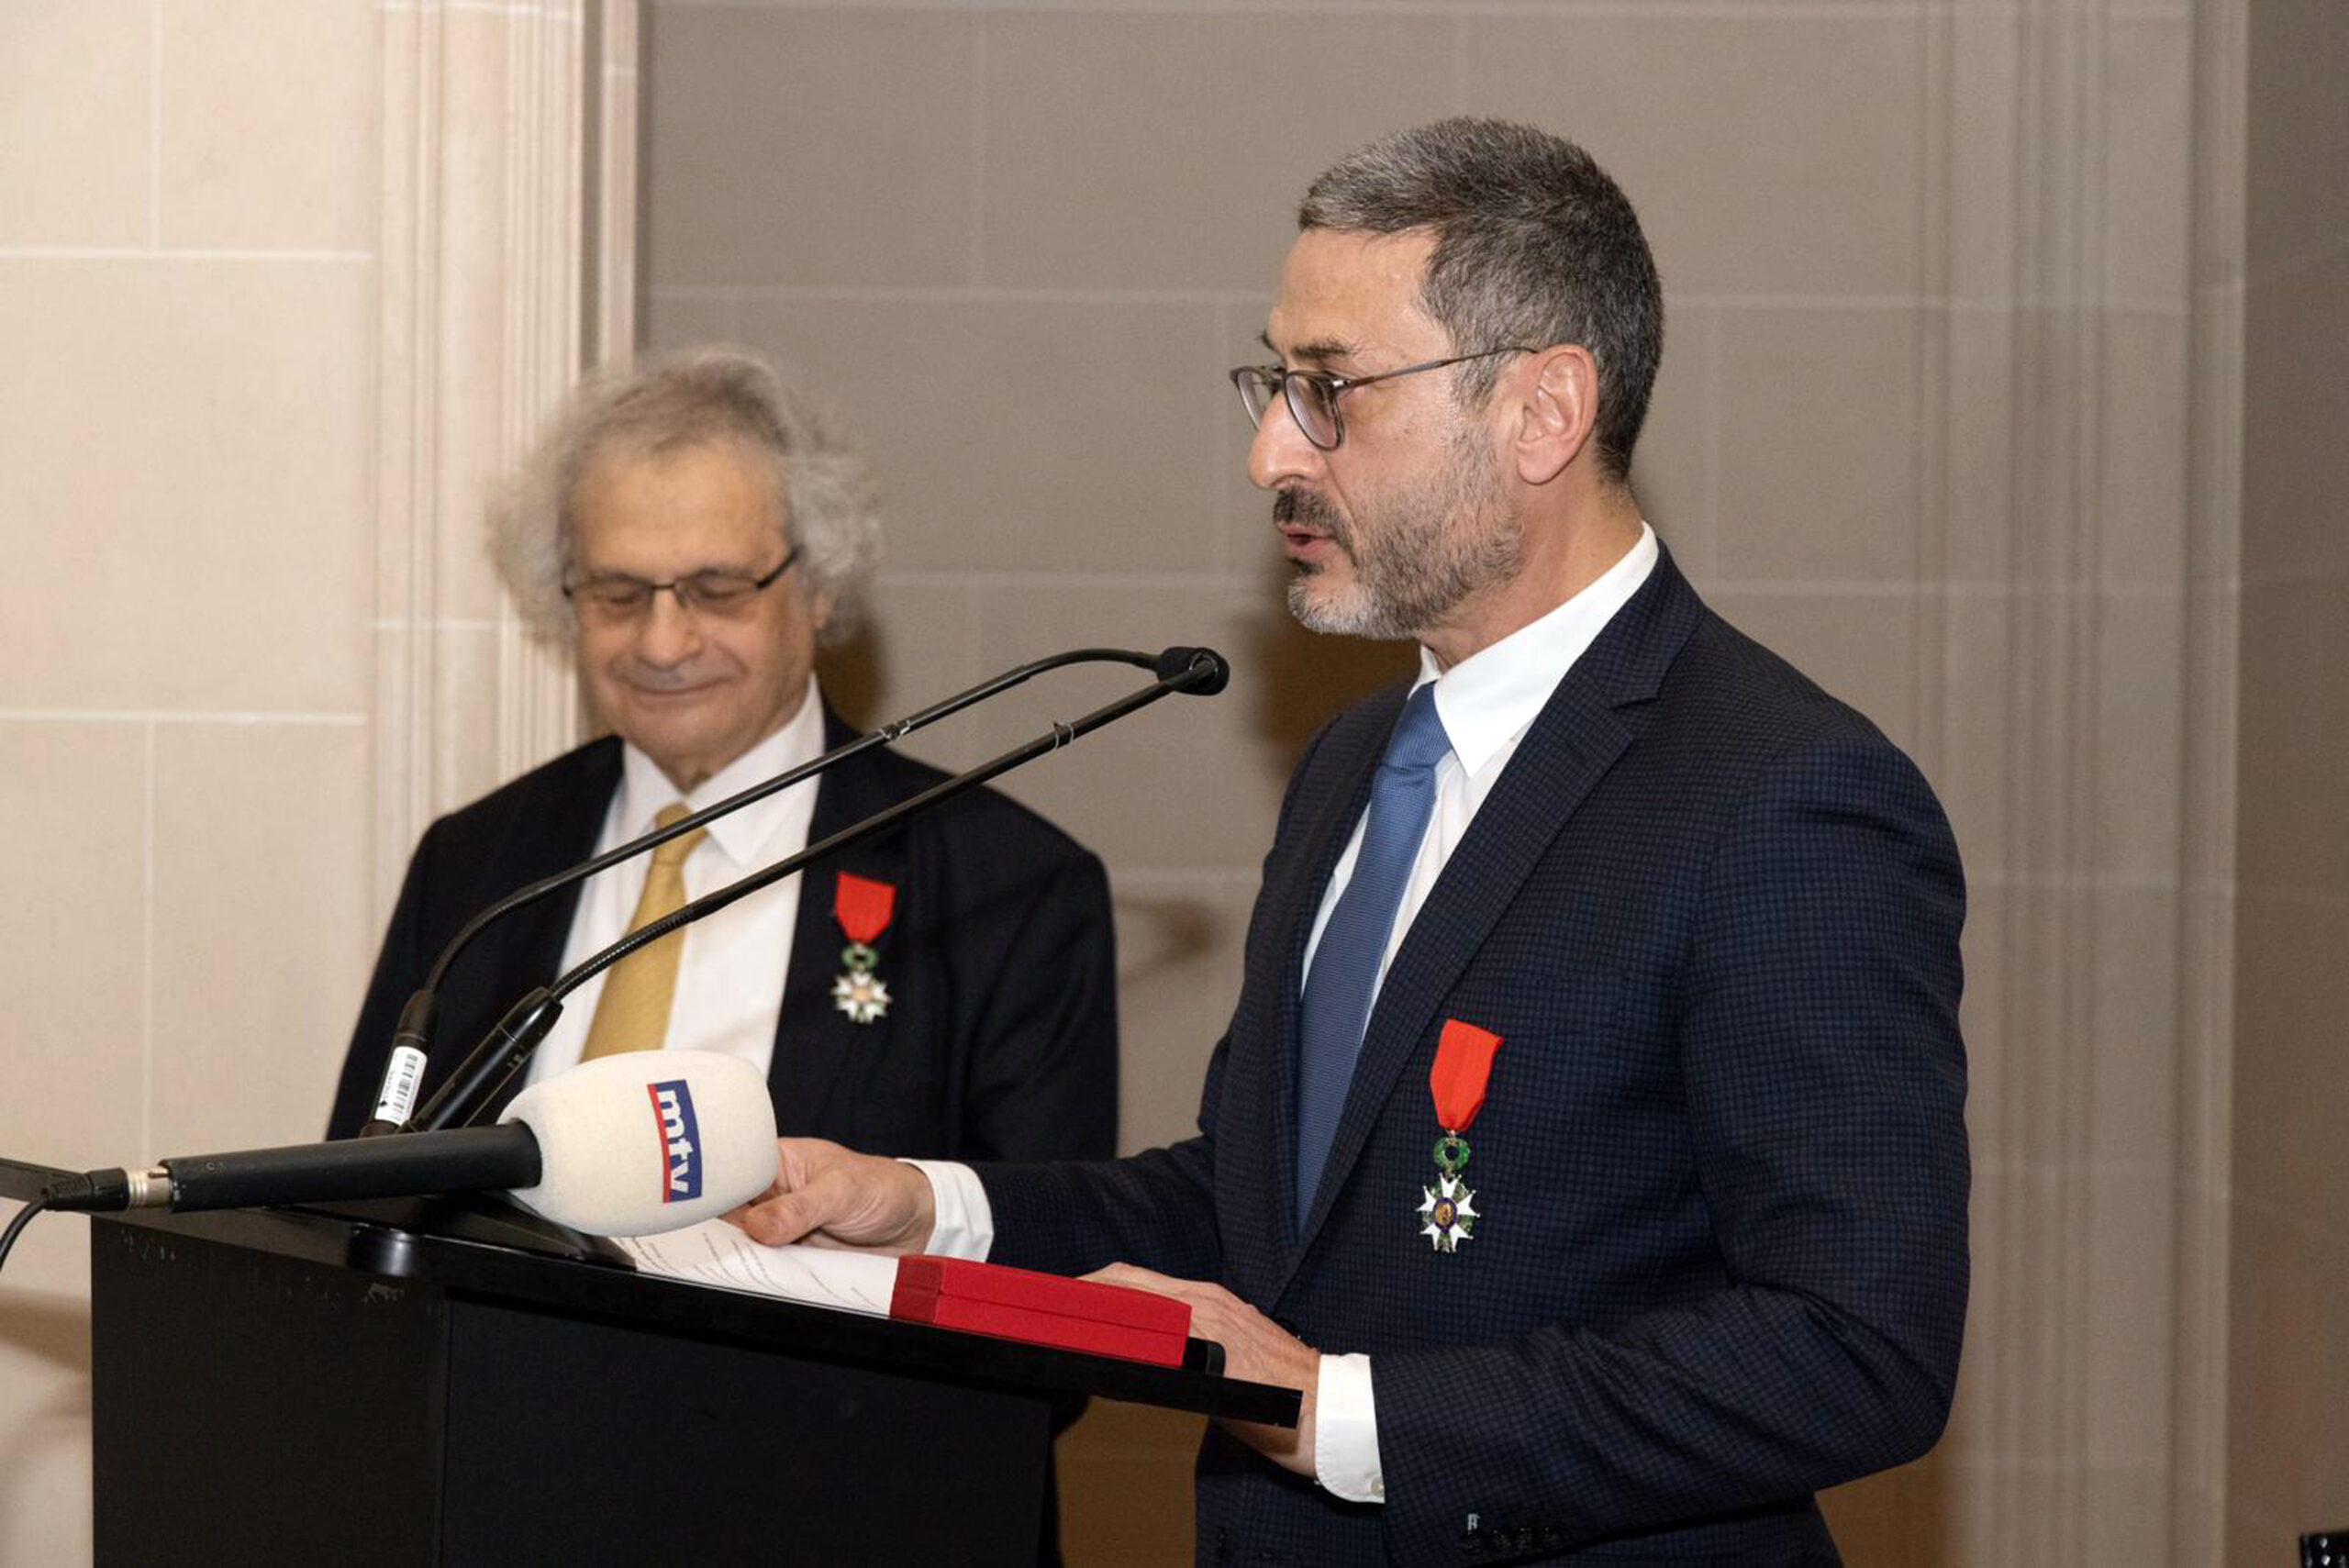 Le professeur Hassan Hosseini, ponte dans la lutte contre les AVC, reçoit sa Légion d’honneur des mains d’Amin Maalouf